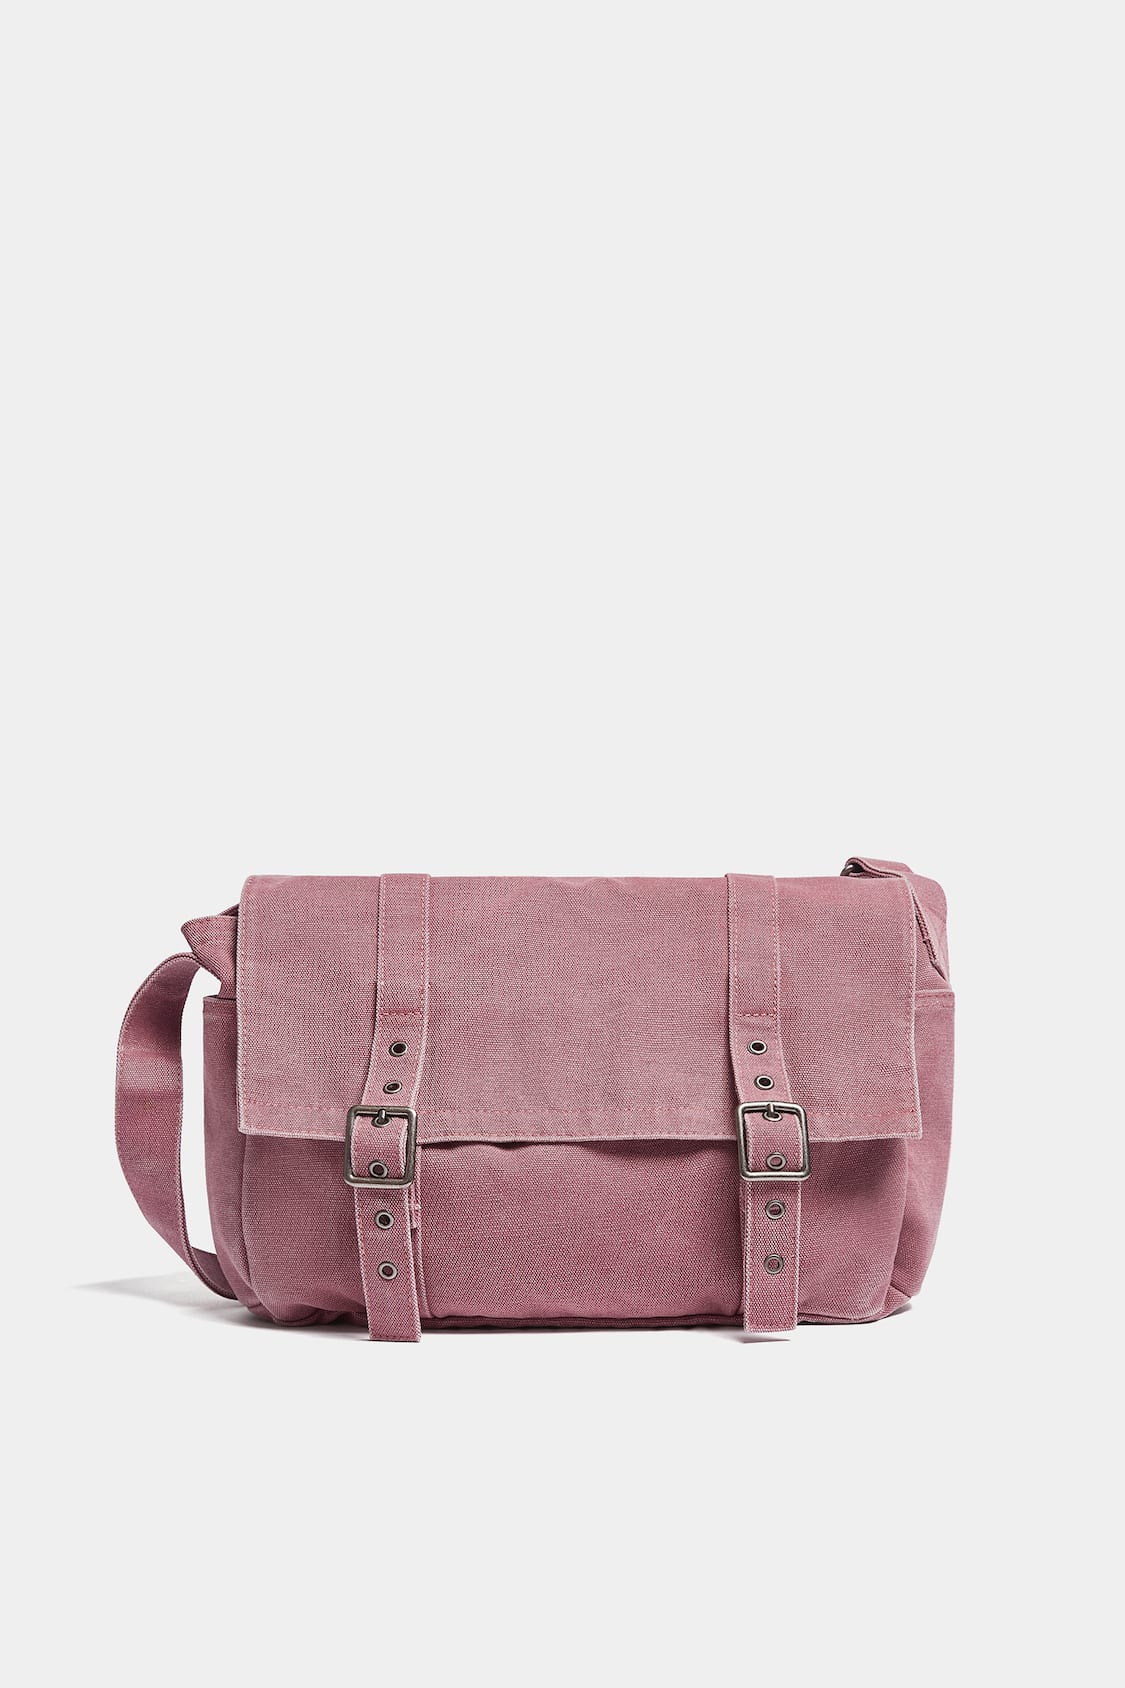 Women's Canvas Messenger Bag, Large Capacity Crossbody Bag, Trendy  Multi-Pocket Shoulder Bag